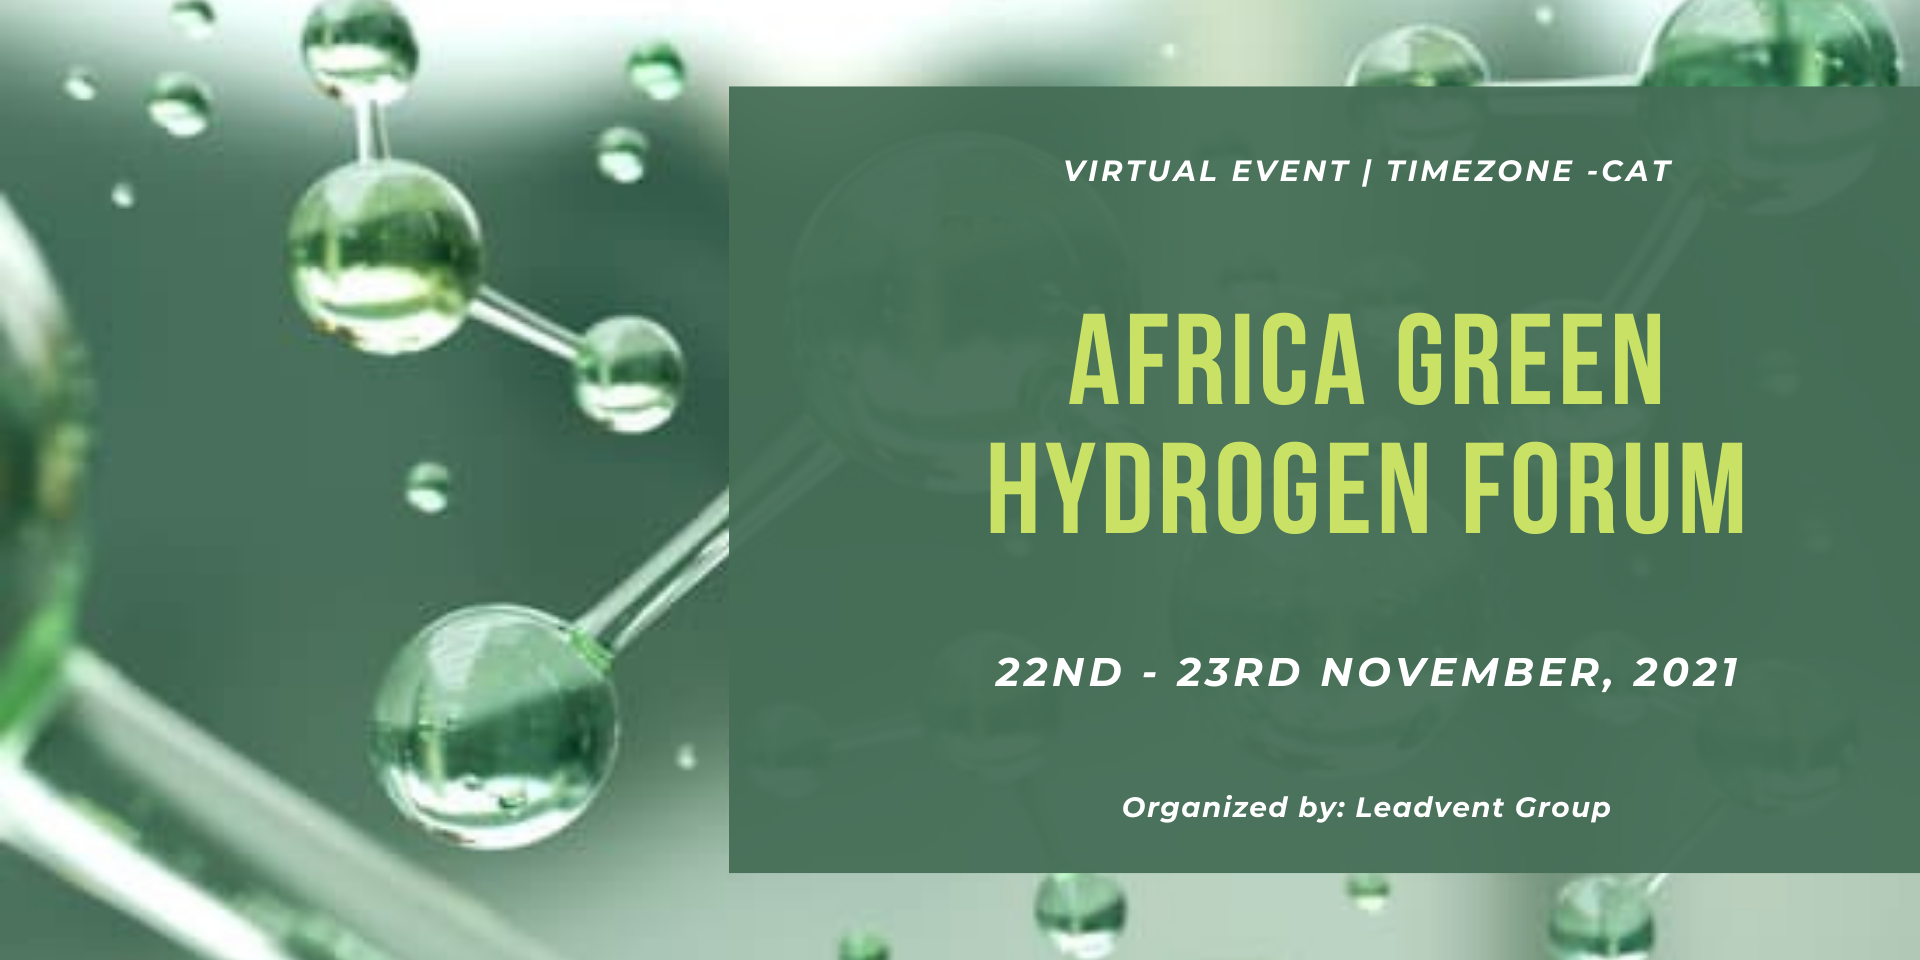 Africa Green Hydrogen Forum | 22nd -23rd November, 2021